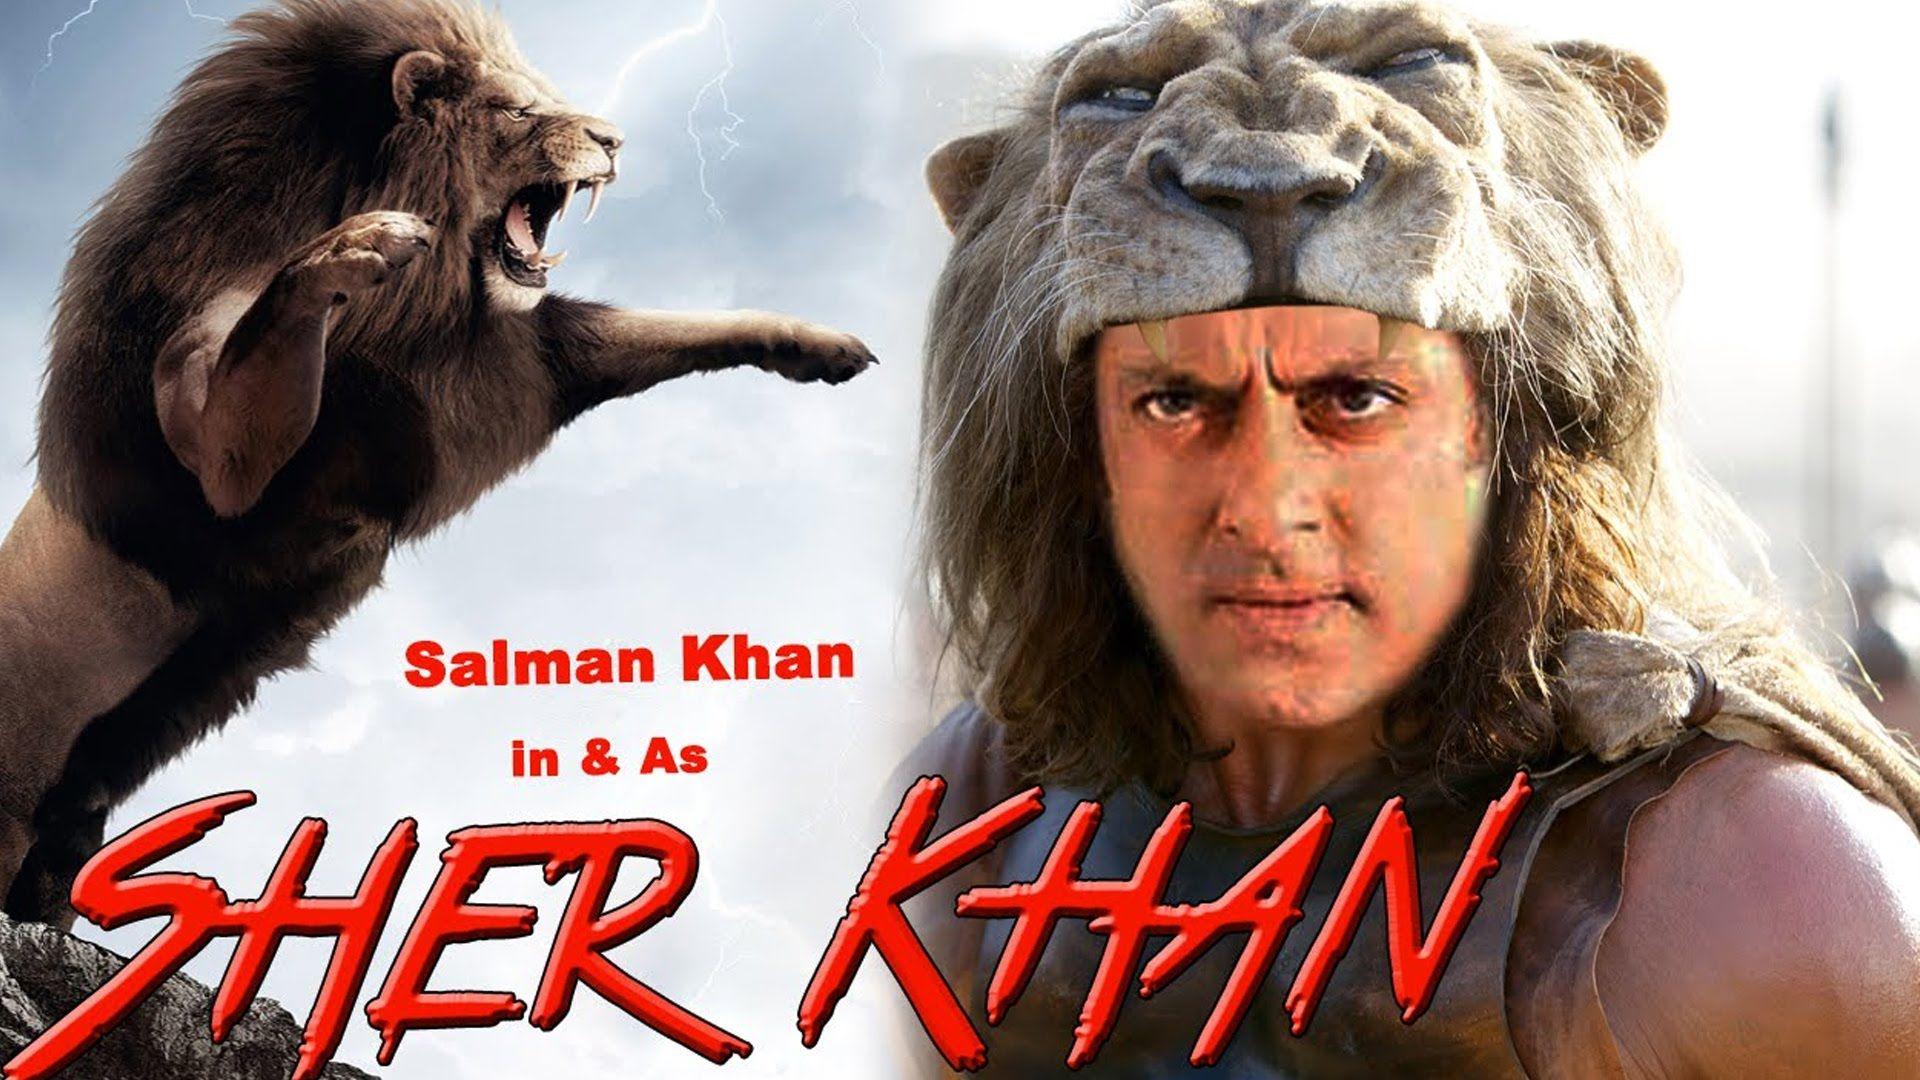 Sher Khan Salman Khan Movie Wallpapers - Wallpaper Cave